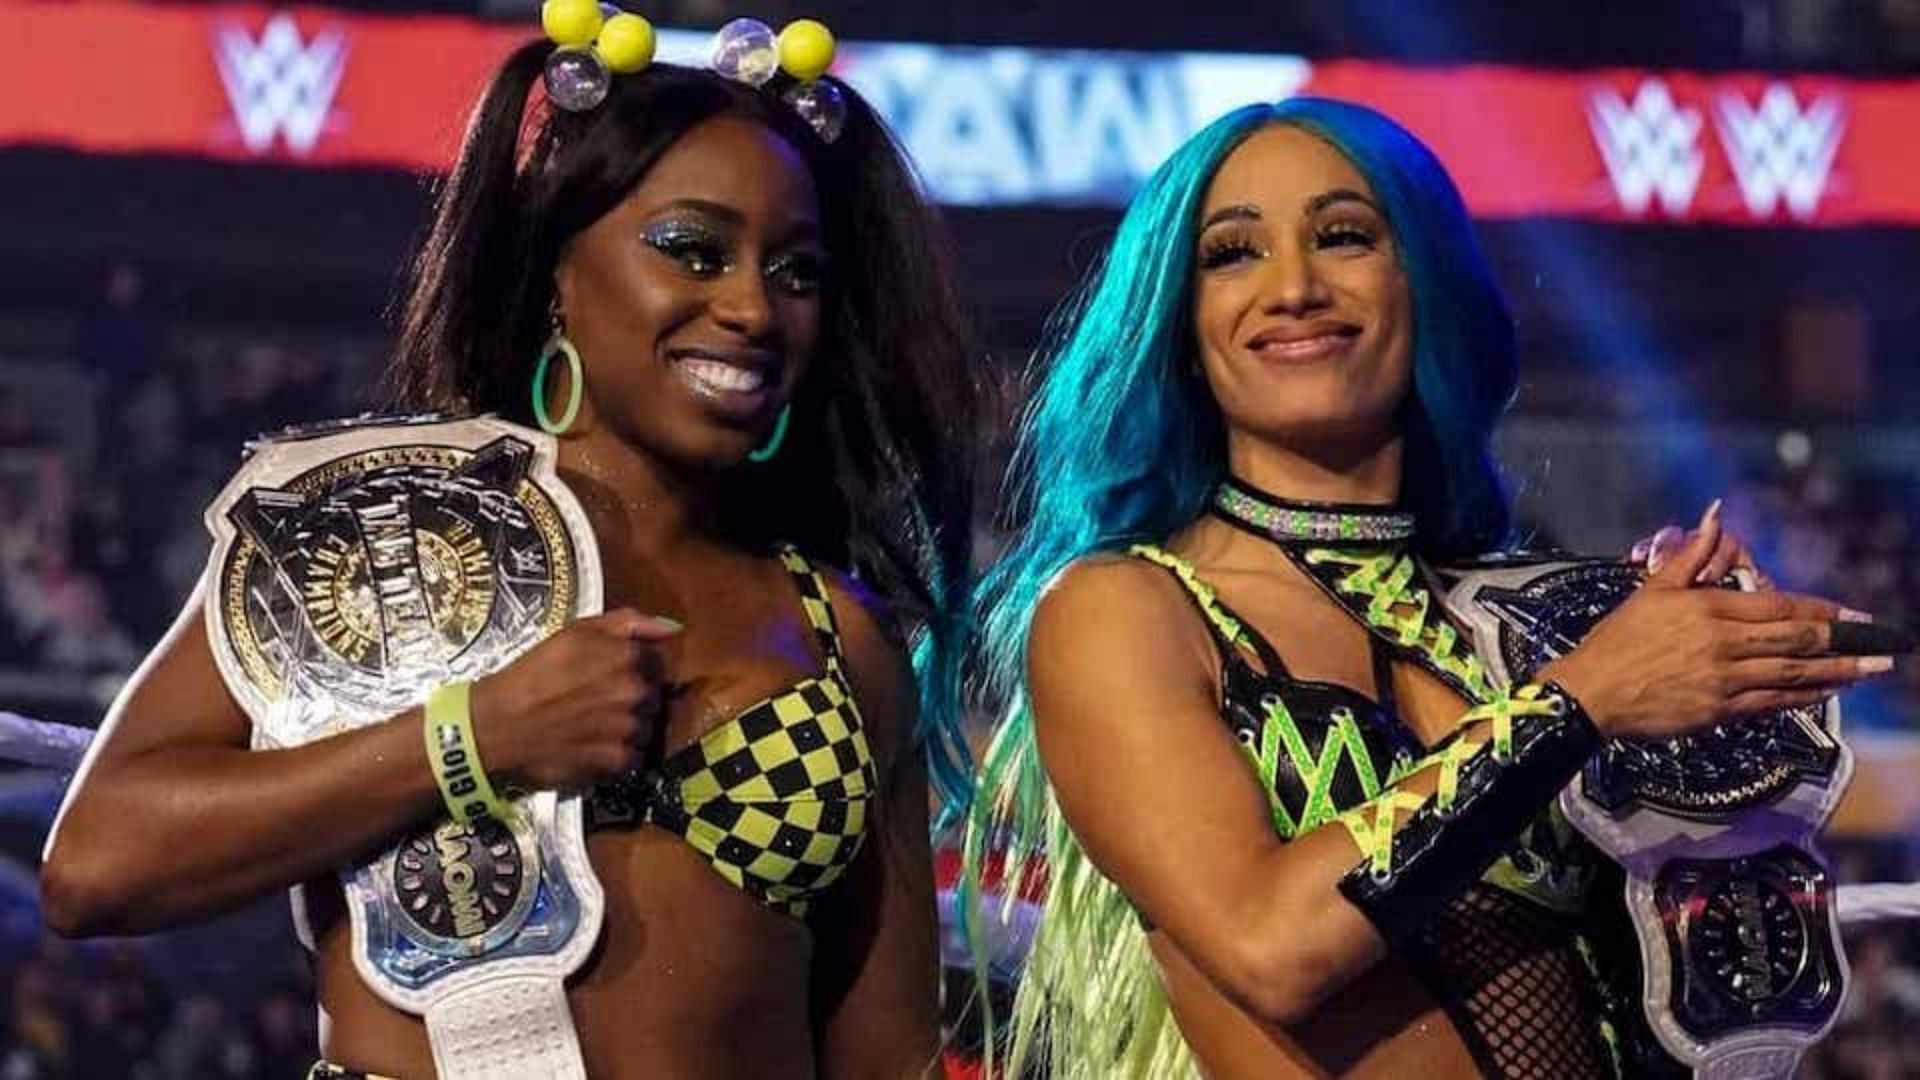 Sasha Banks and Naomi are former WWE Women